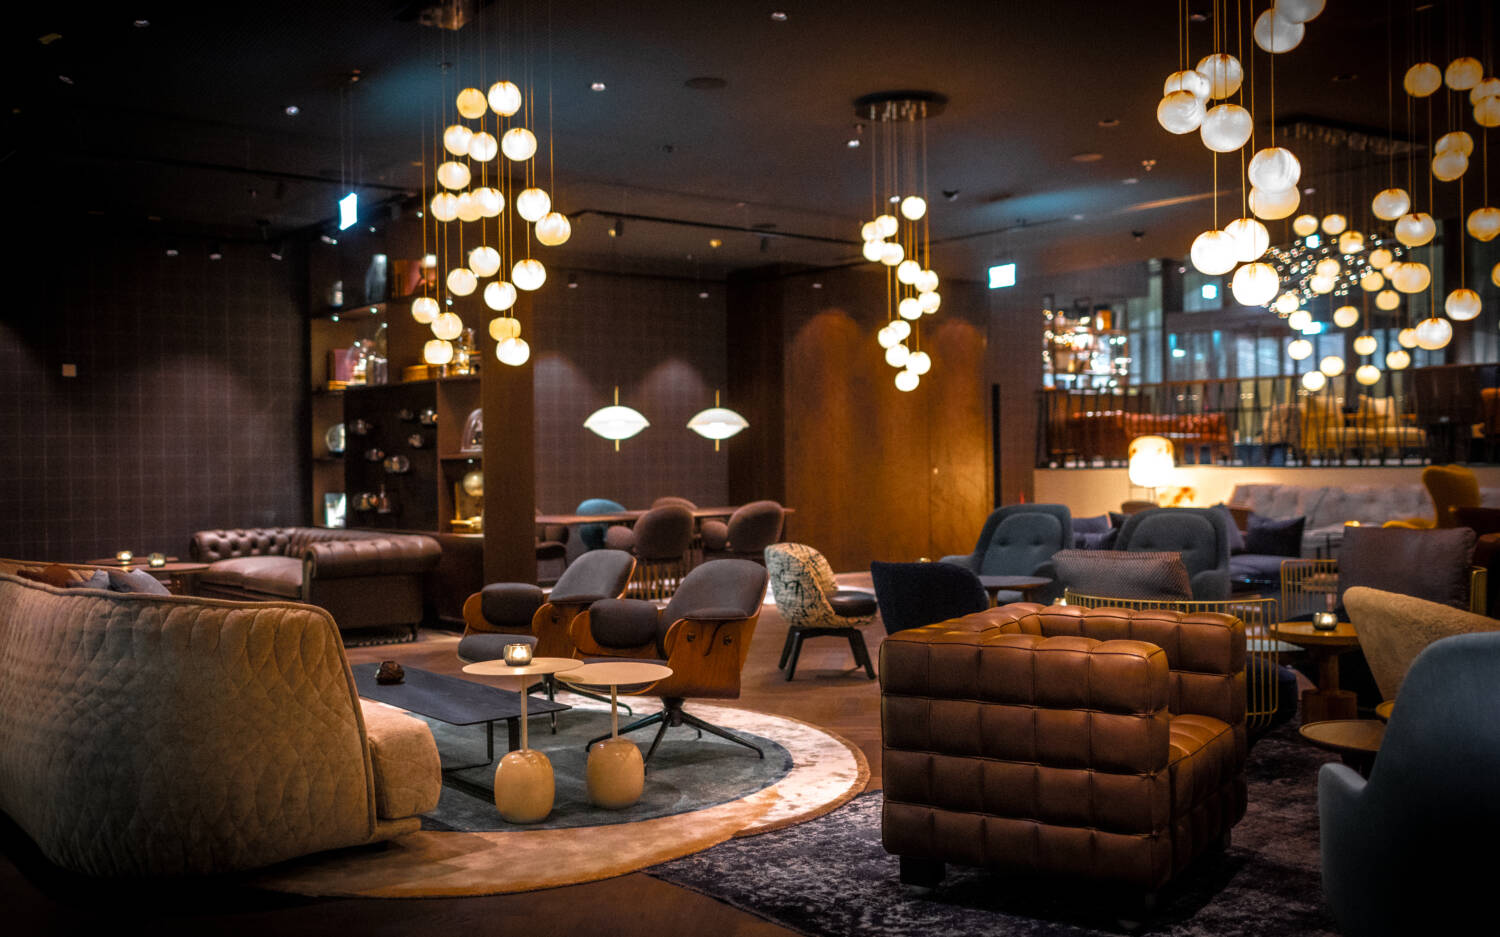 In der Lounge finden Gäste Platz auf Sesseln und Sofas / ©The Cloud One Hotels